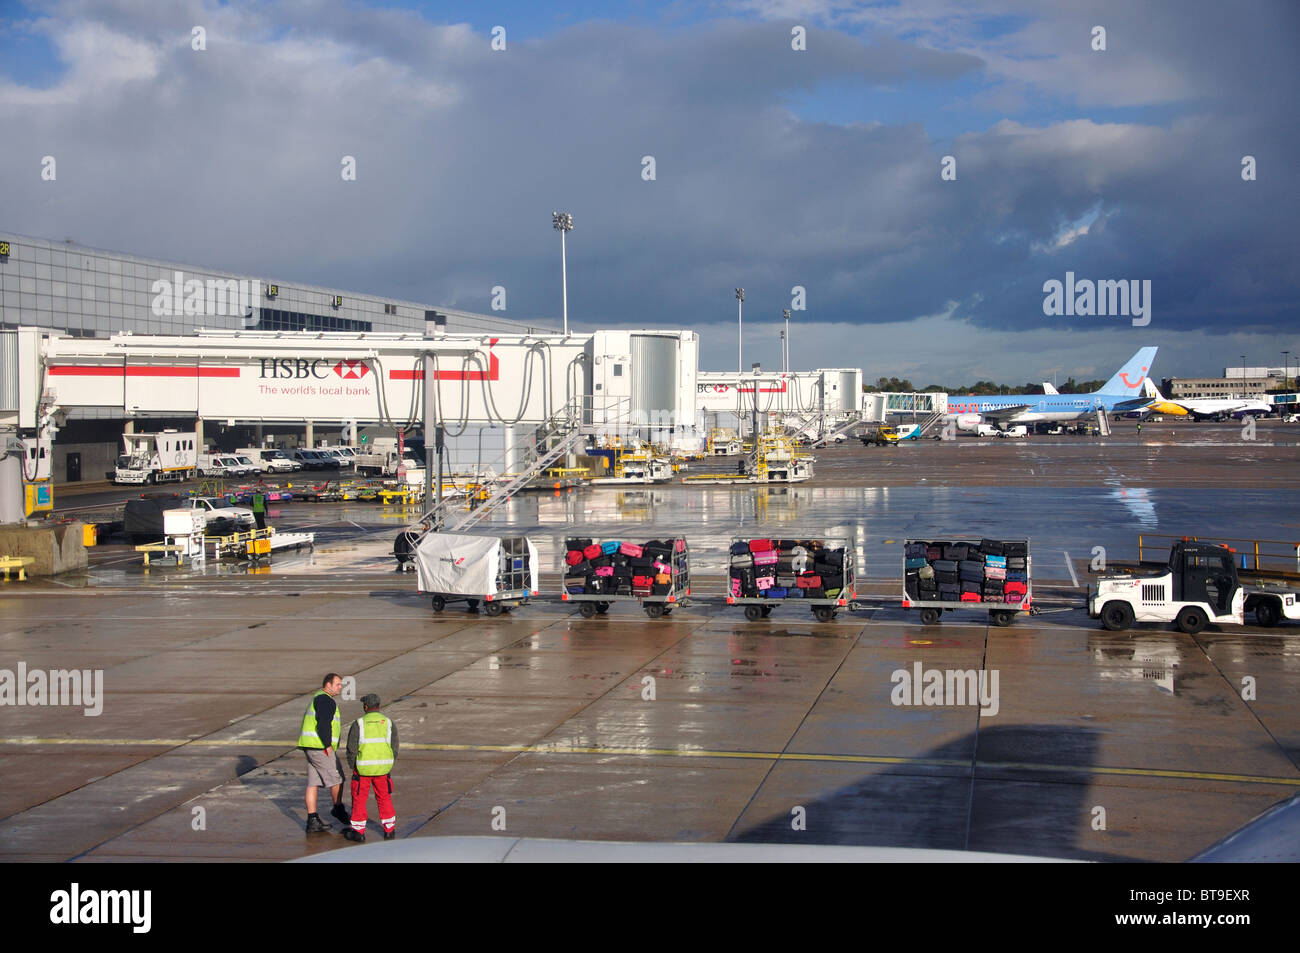 Gepäck-Trolleys auf Asphalt, Gatwick Flughafen, Nordterminal, Gatwick Flughafen, Crawley, West Sussex, England, Vereinigtes Königreich Stockfoto